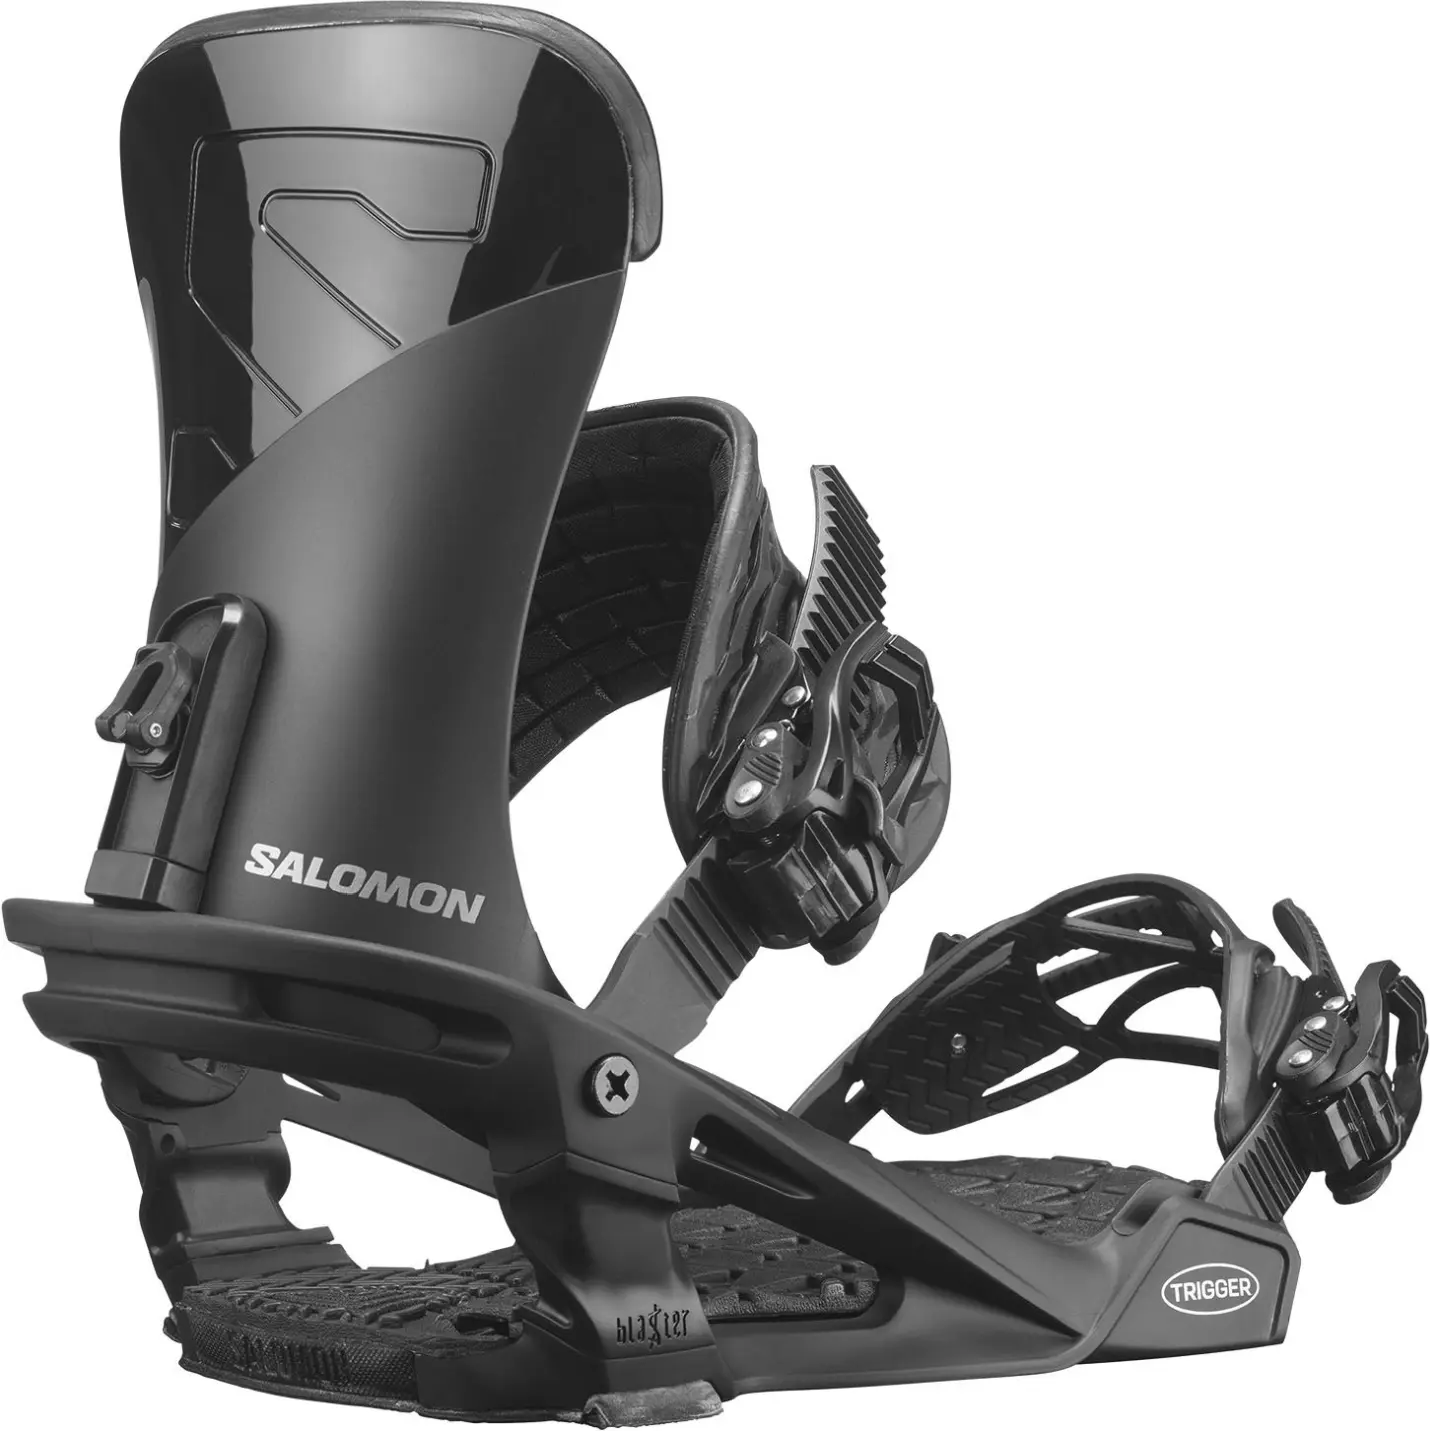 Salomon Trigger black attacco snowboard- attacchi snowboard